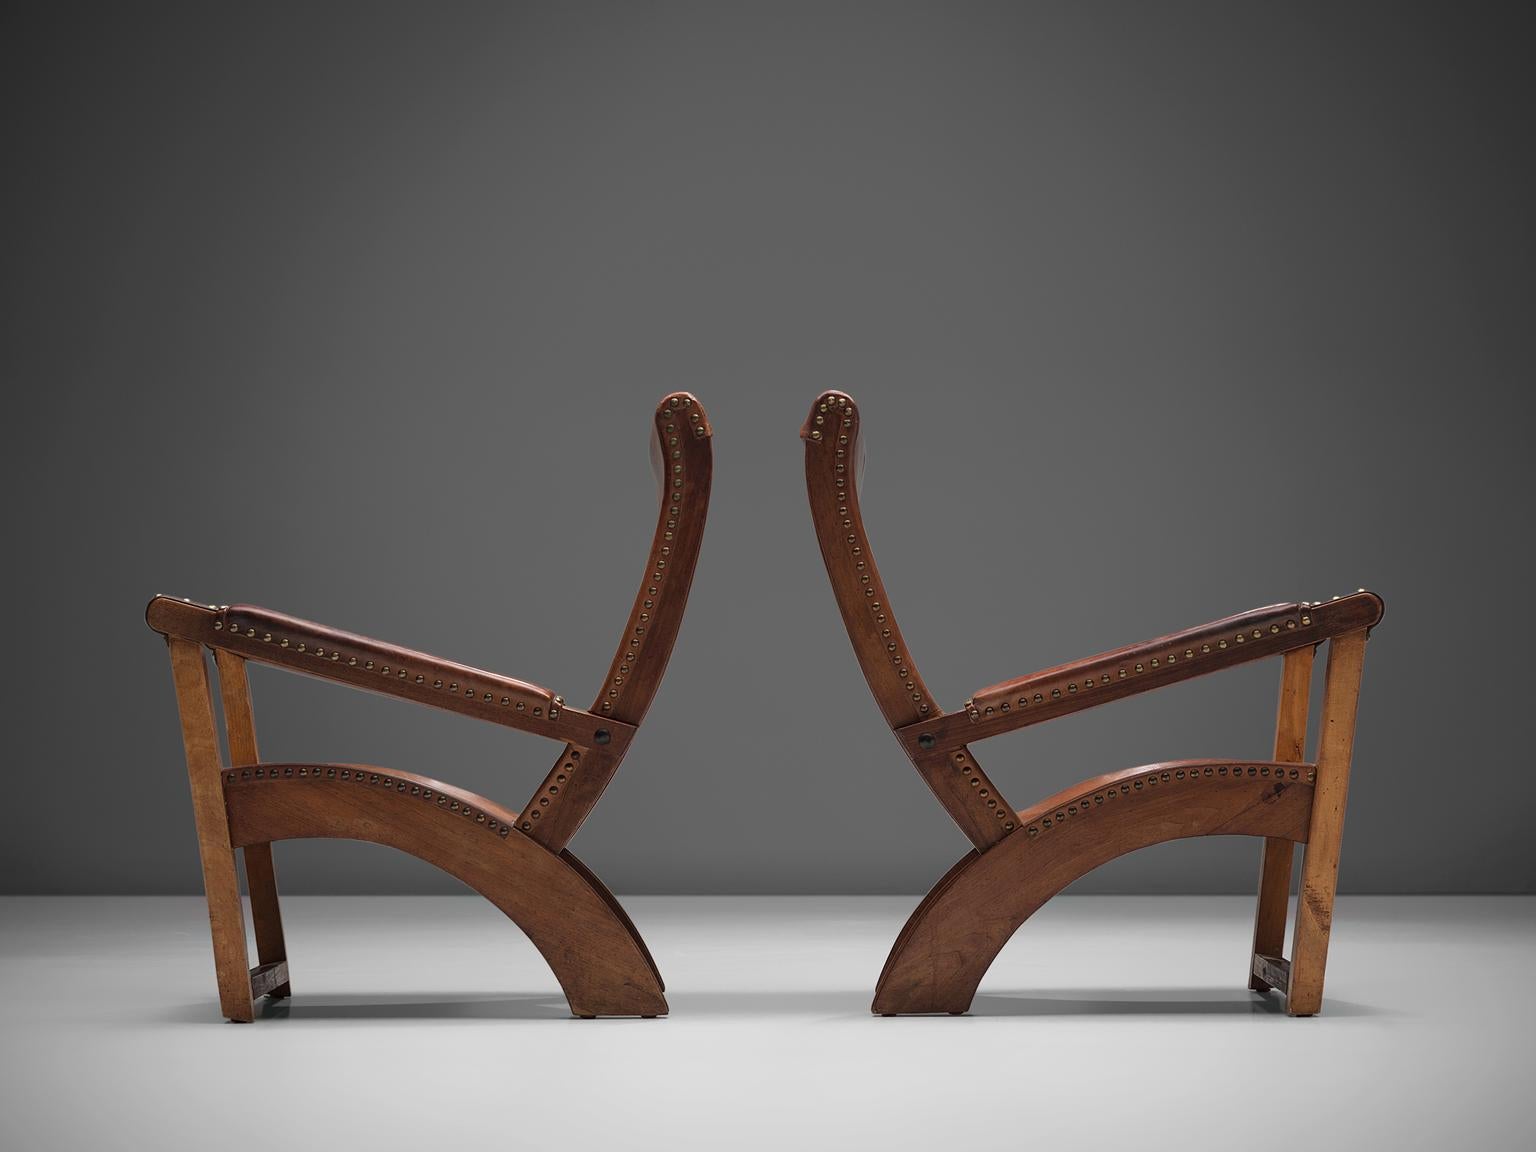 Danish Mogens Voltelen Cabinet Maker 'Copenhagen' Chairs